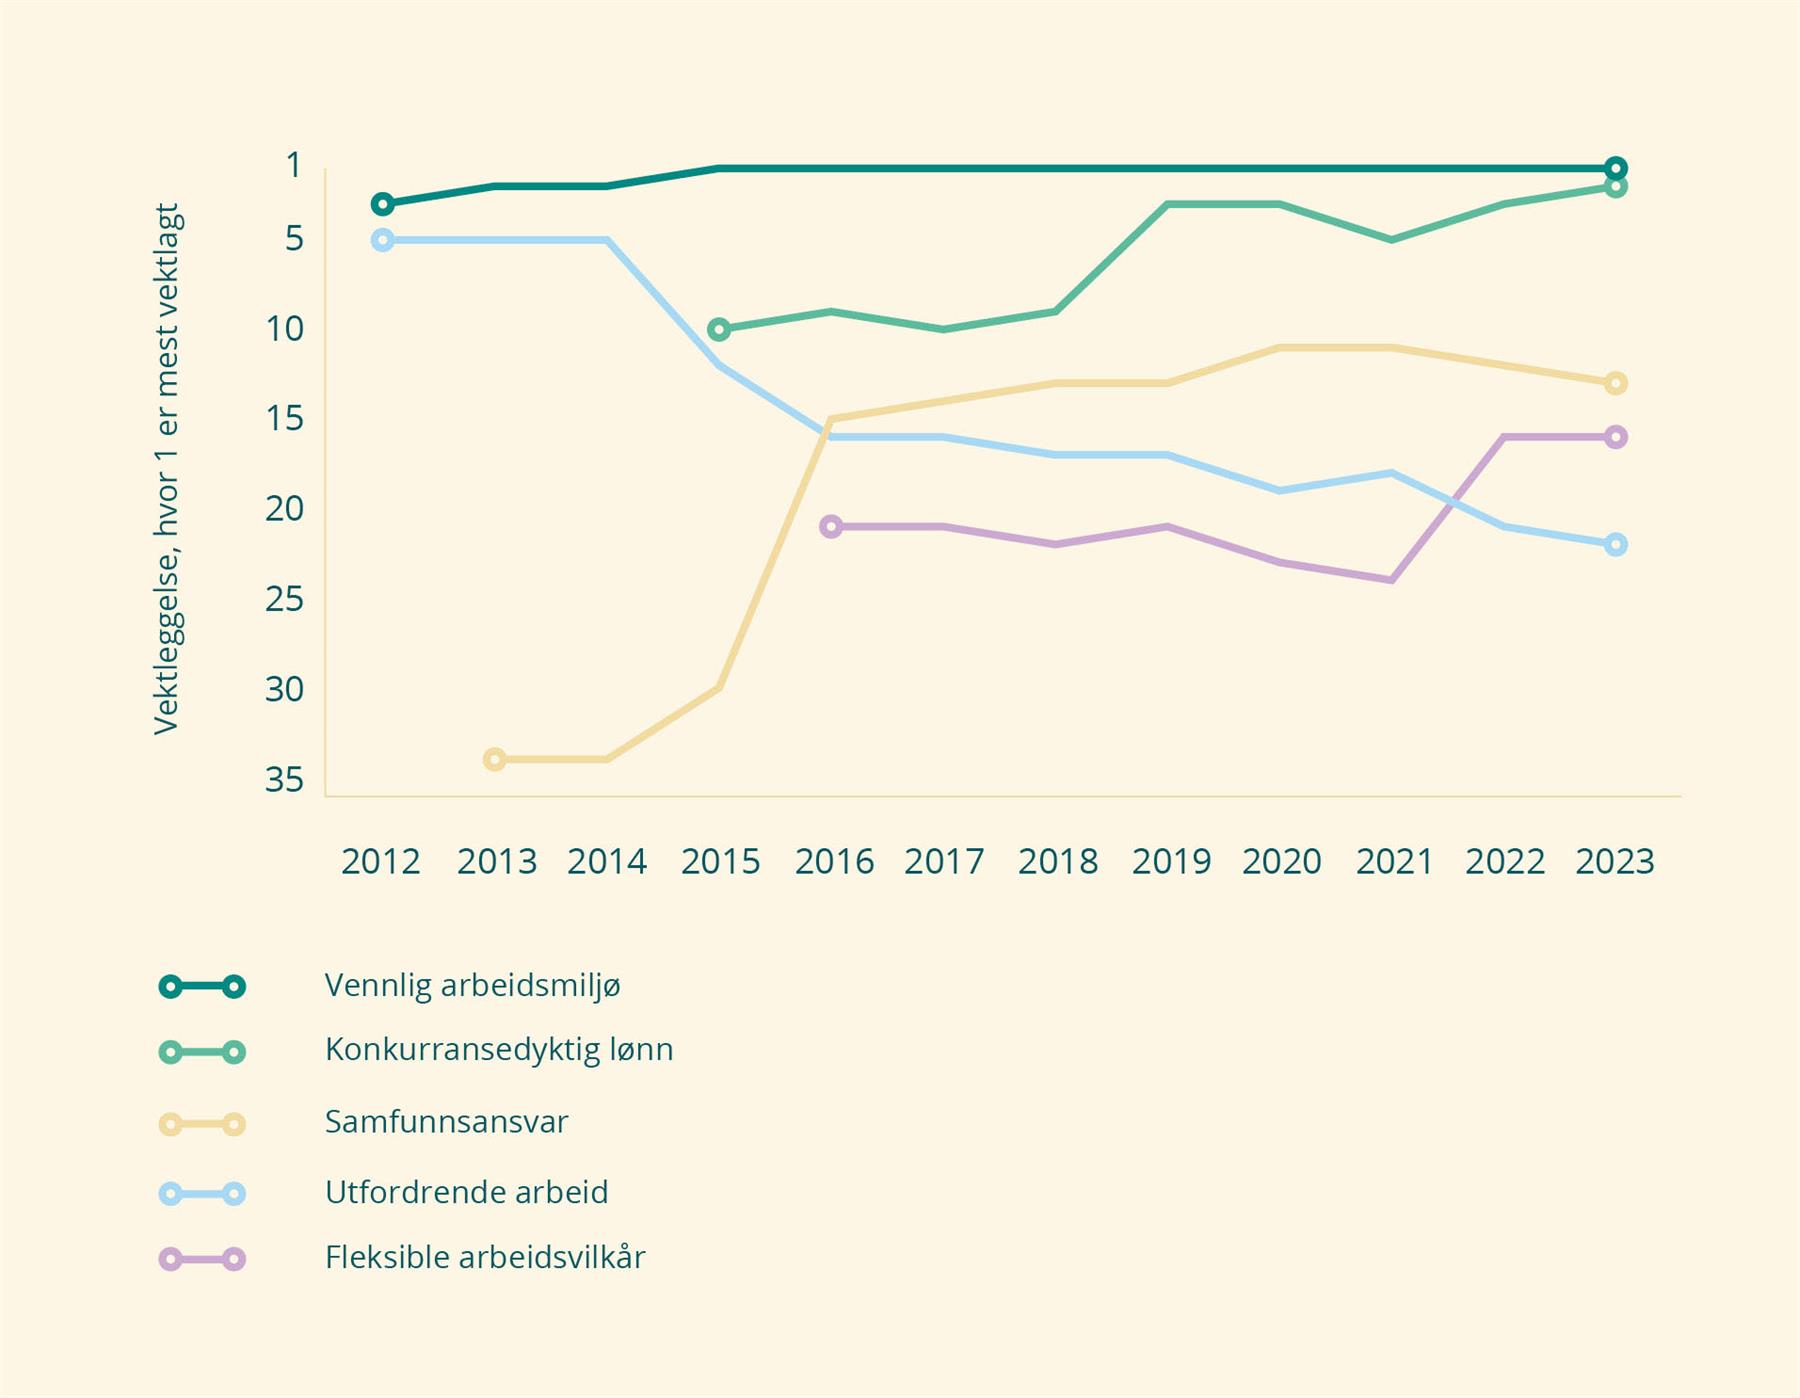 Figur som viser hva norske studenter vektlegger hos arbeidsgiver, basert på tall fra 2012–2023. Vennlig arbeidsmiljø er mest vektlagt gjennom alle årene.